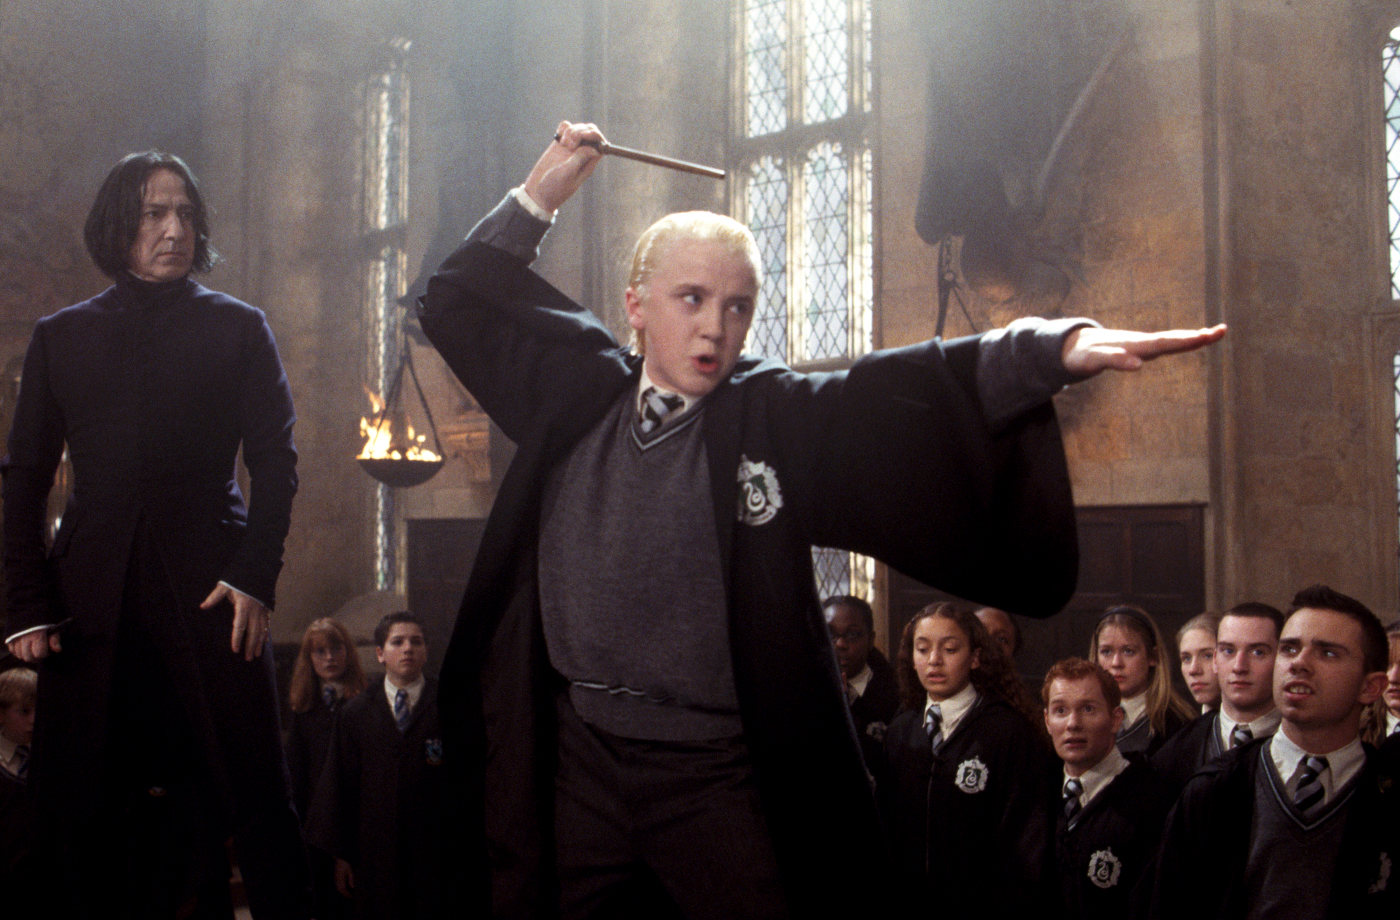 Te ráismersz még a Malfoy-t alakító színészre?